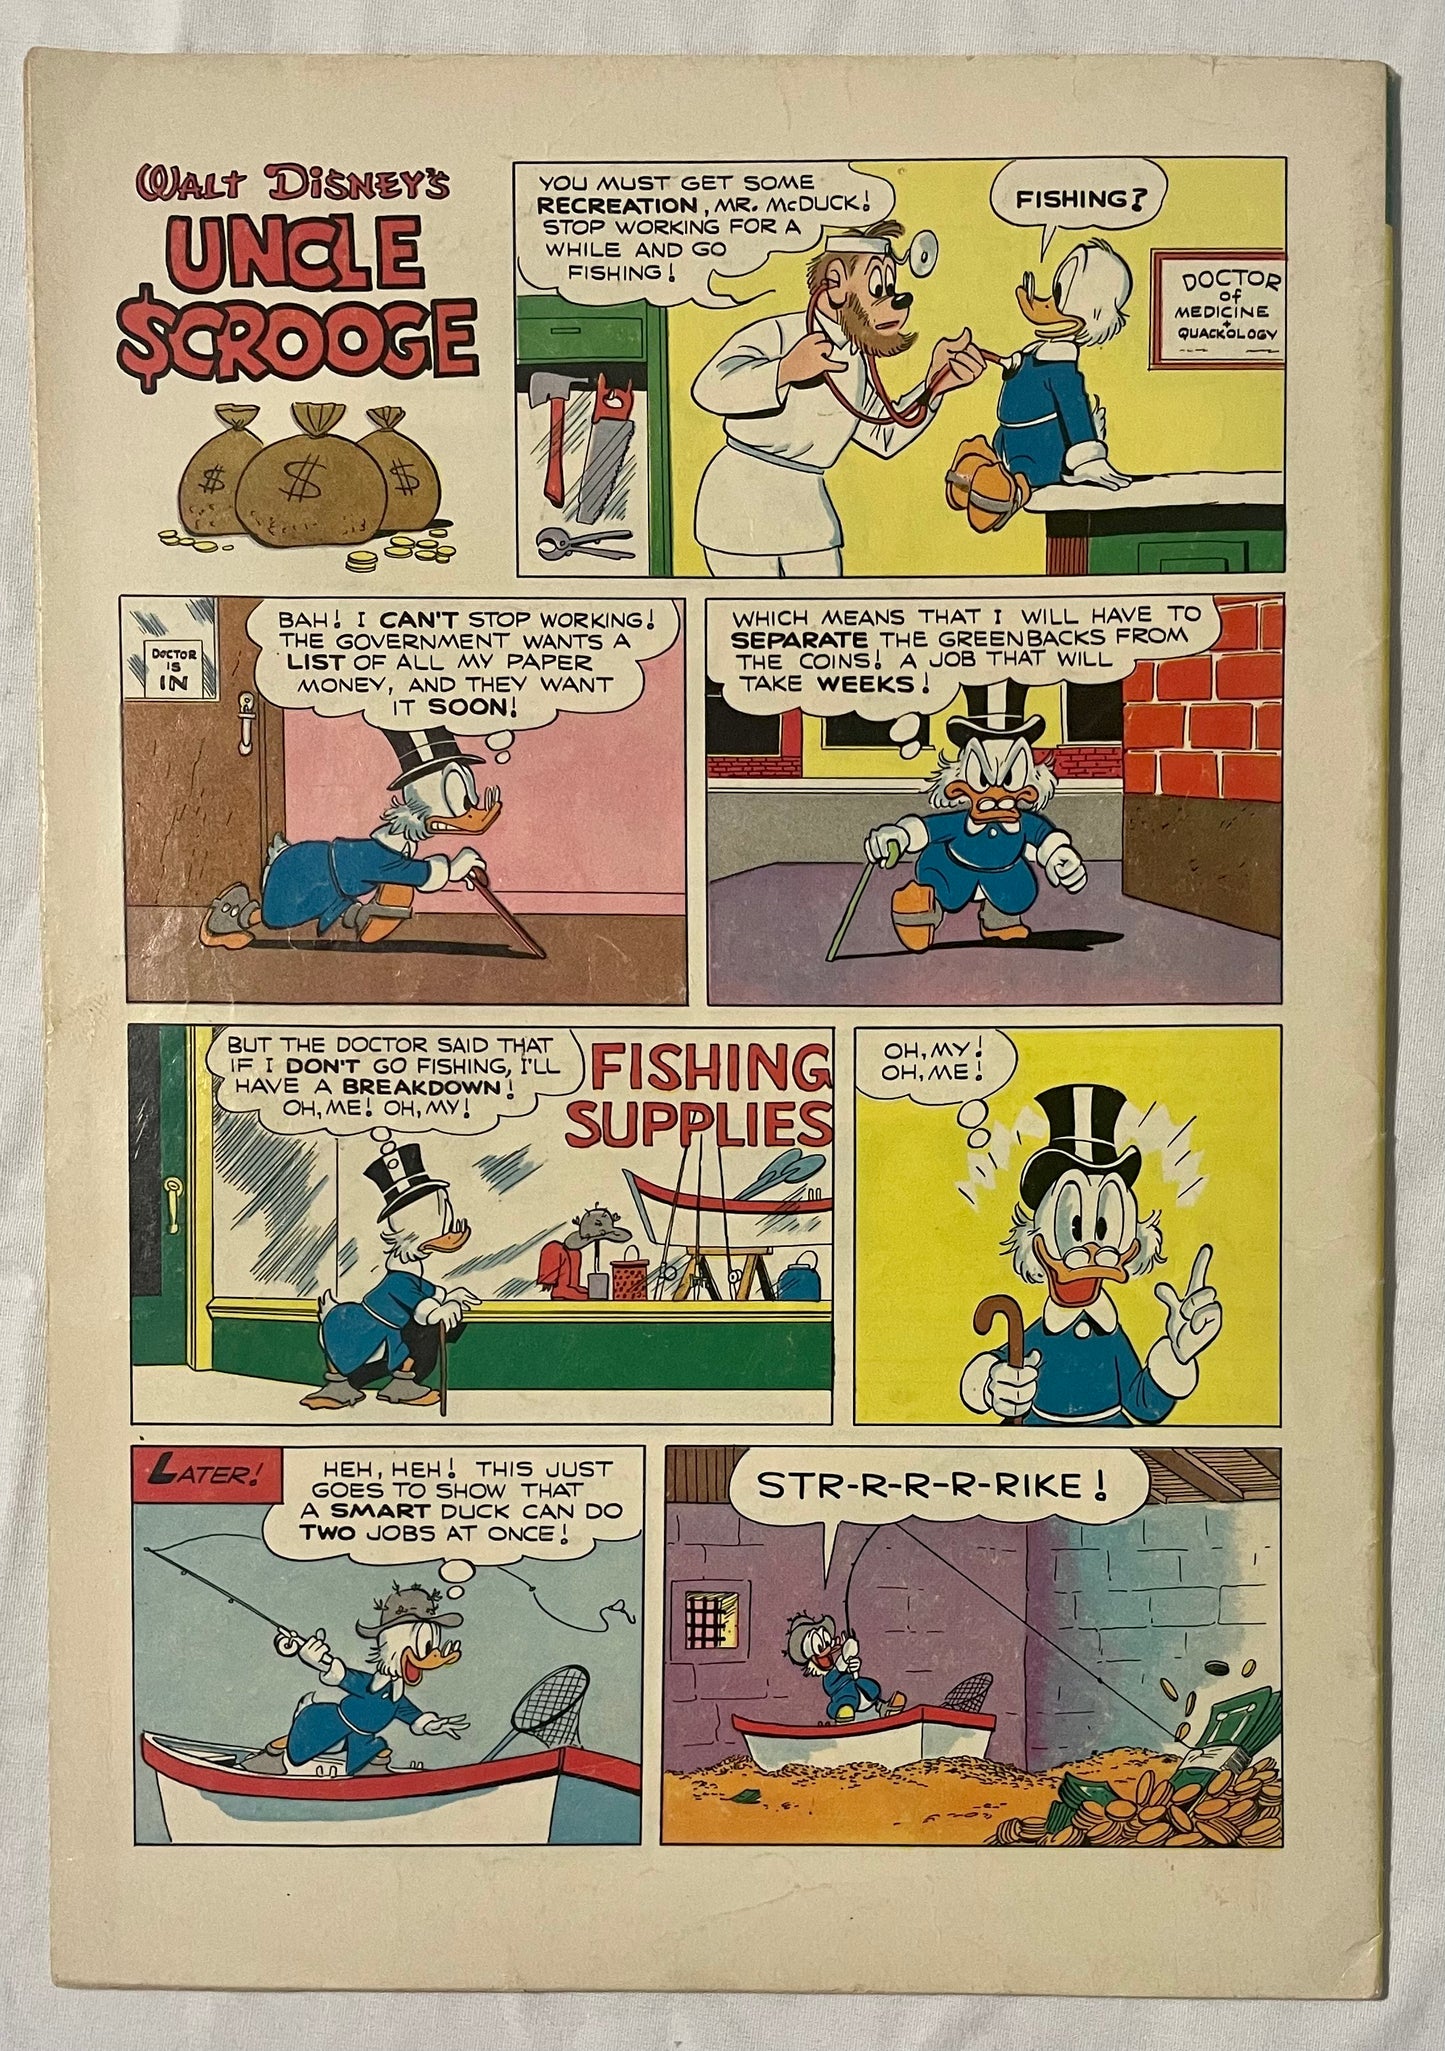 Dell Comics Walt Disney's Uncle Scrooge No. 9